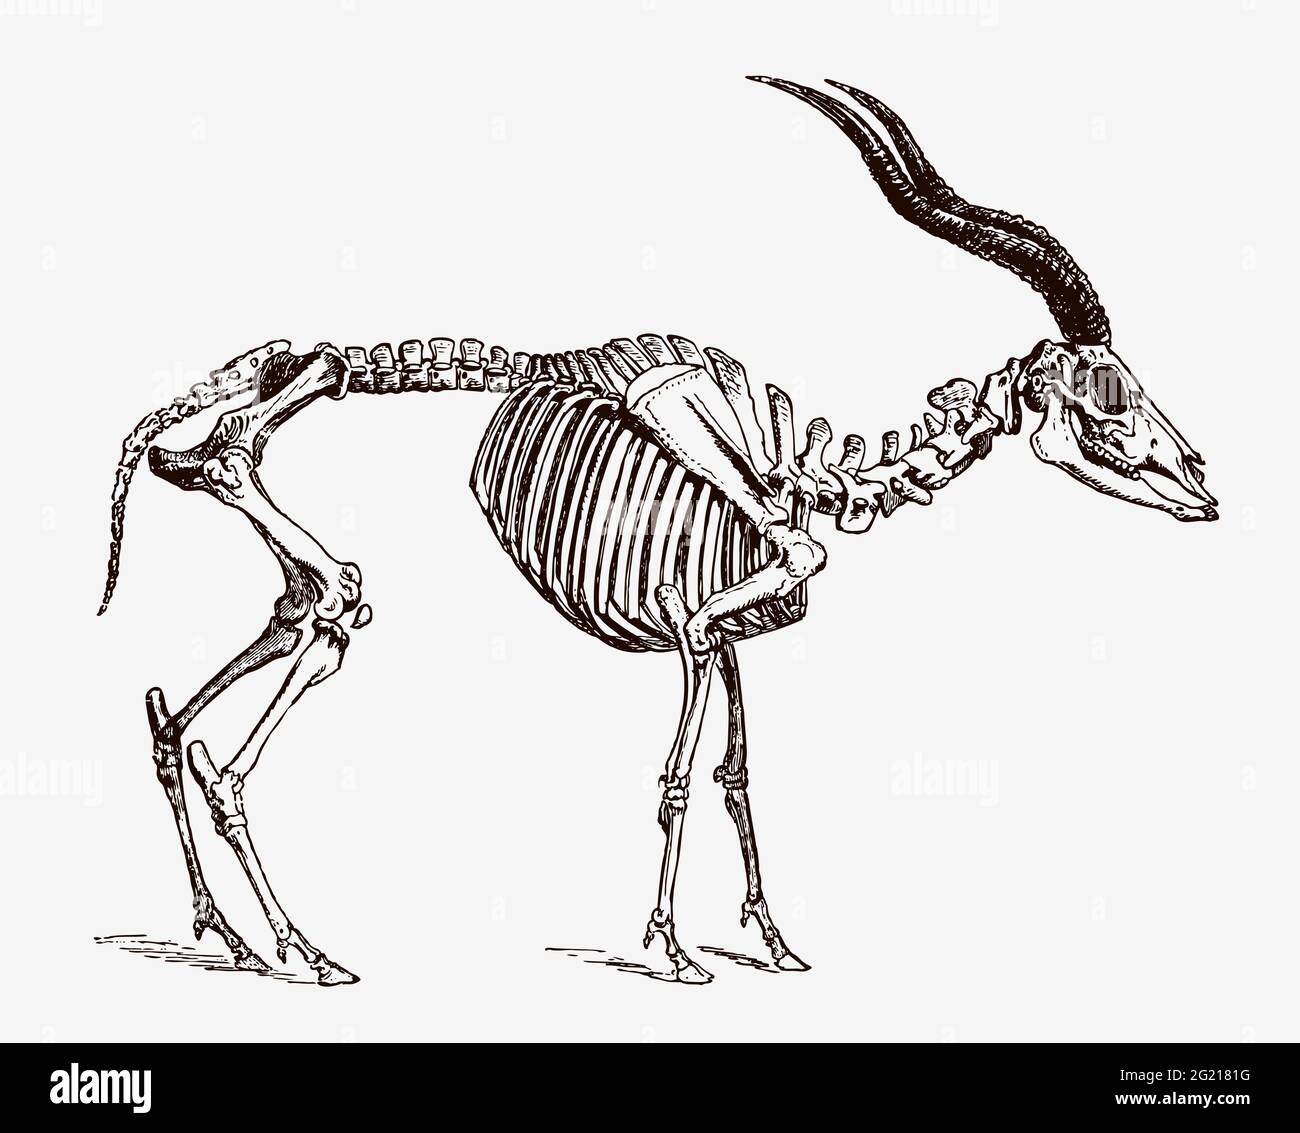 Lo scheletro di addax nasomaculatus in pericolo critico in vista del profilo, dopo l'incisione antica del 19 ° secolo Illustrazione Vettoriale